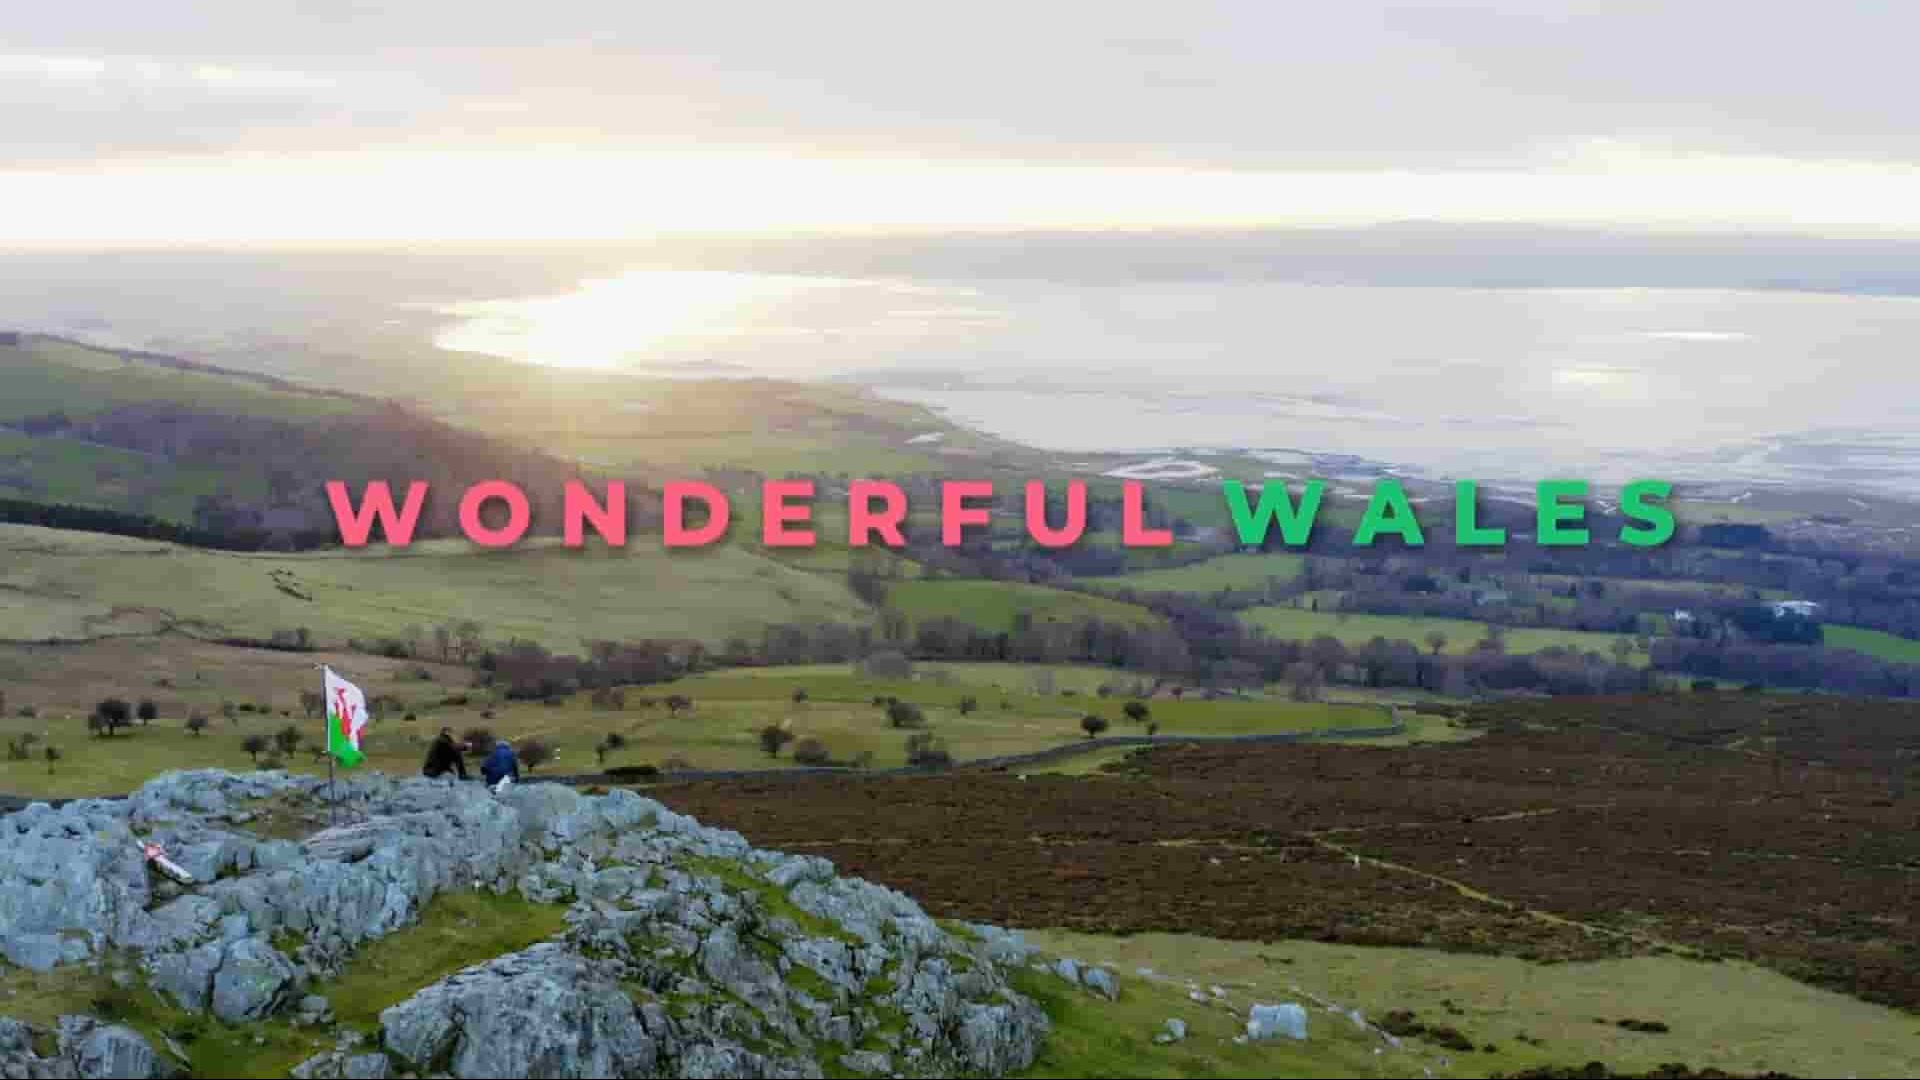 Ch5纪录片《迈克尔·鲍尔的精彩威尔士 Wonderful Wales with Michael Ball 2021》第1季全4集 英语中英双字 1080P高清网盘下载